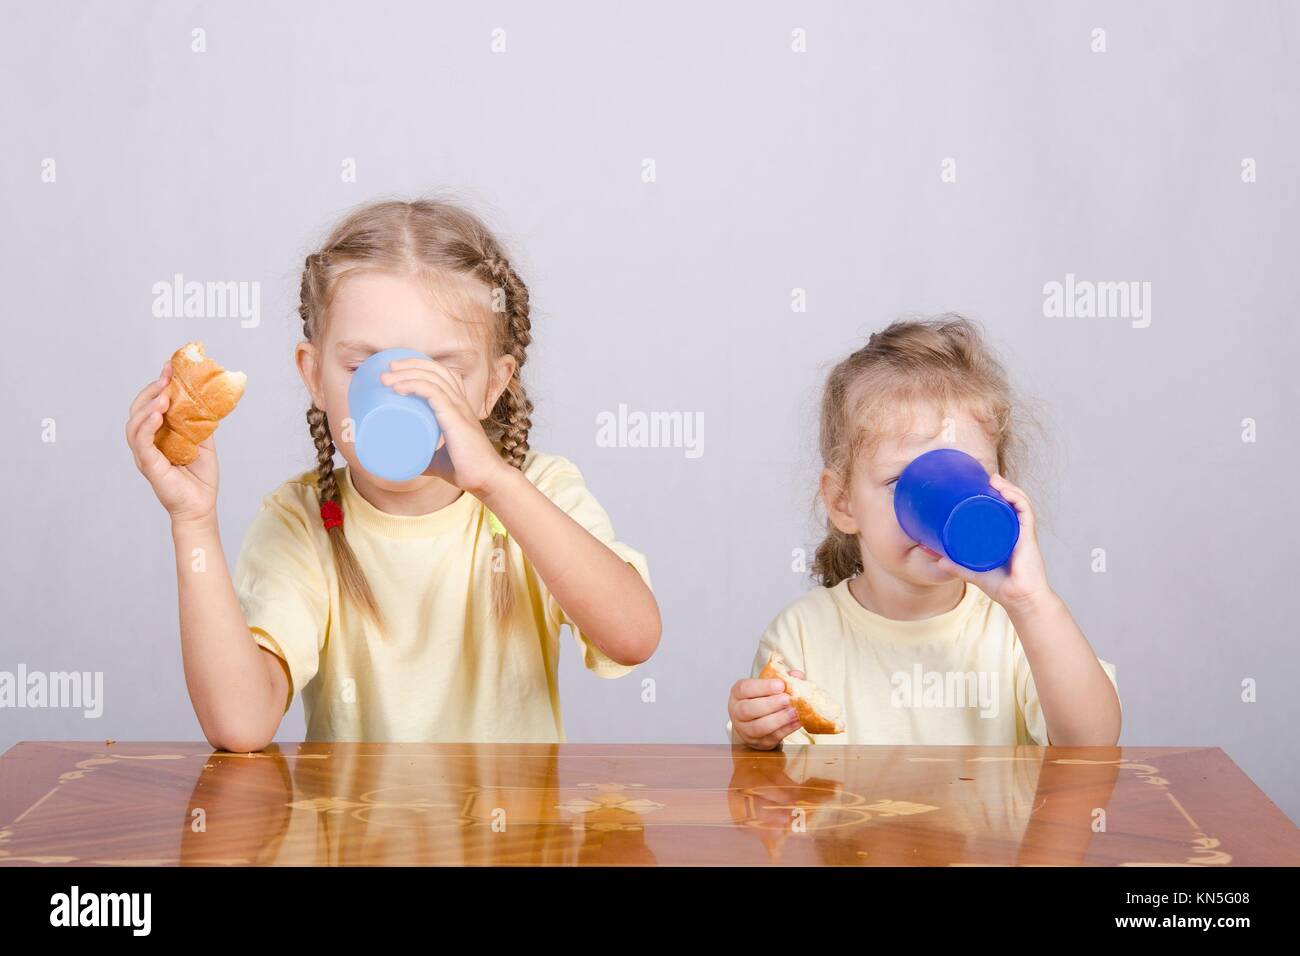 Стучать стаканом. Фото девочек которые бьются стаканчиками. Дети за столом стаканчики фото красивые.